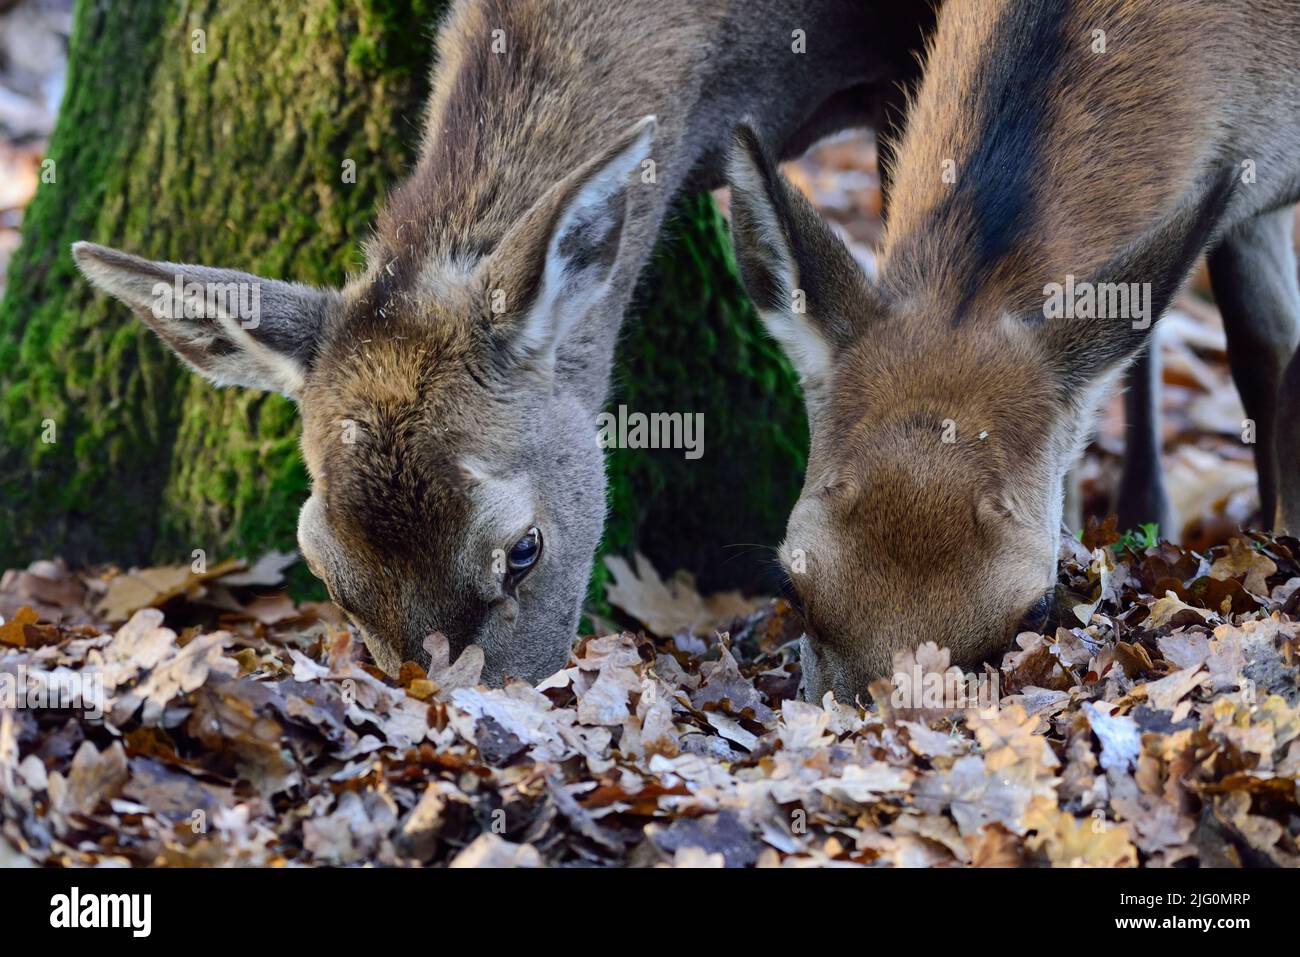 Femmine di cervo rosso che foraggiano sul pavimento della foresta in autunno, ritratto della testa, renania settentrionale vestfalia, (cerco elaphus), germania Foto Stock